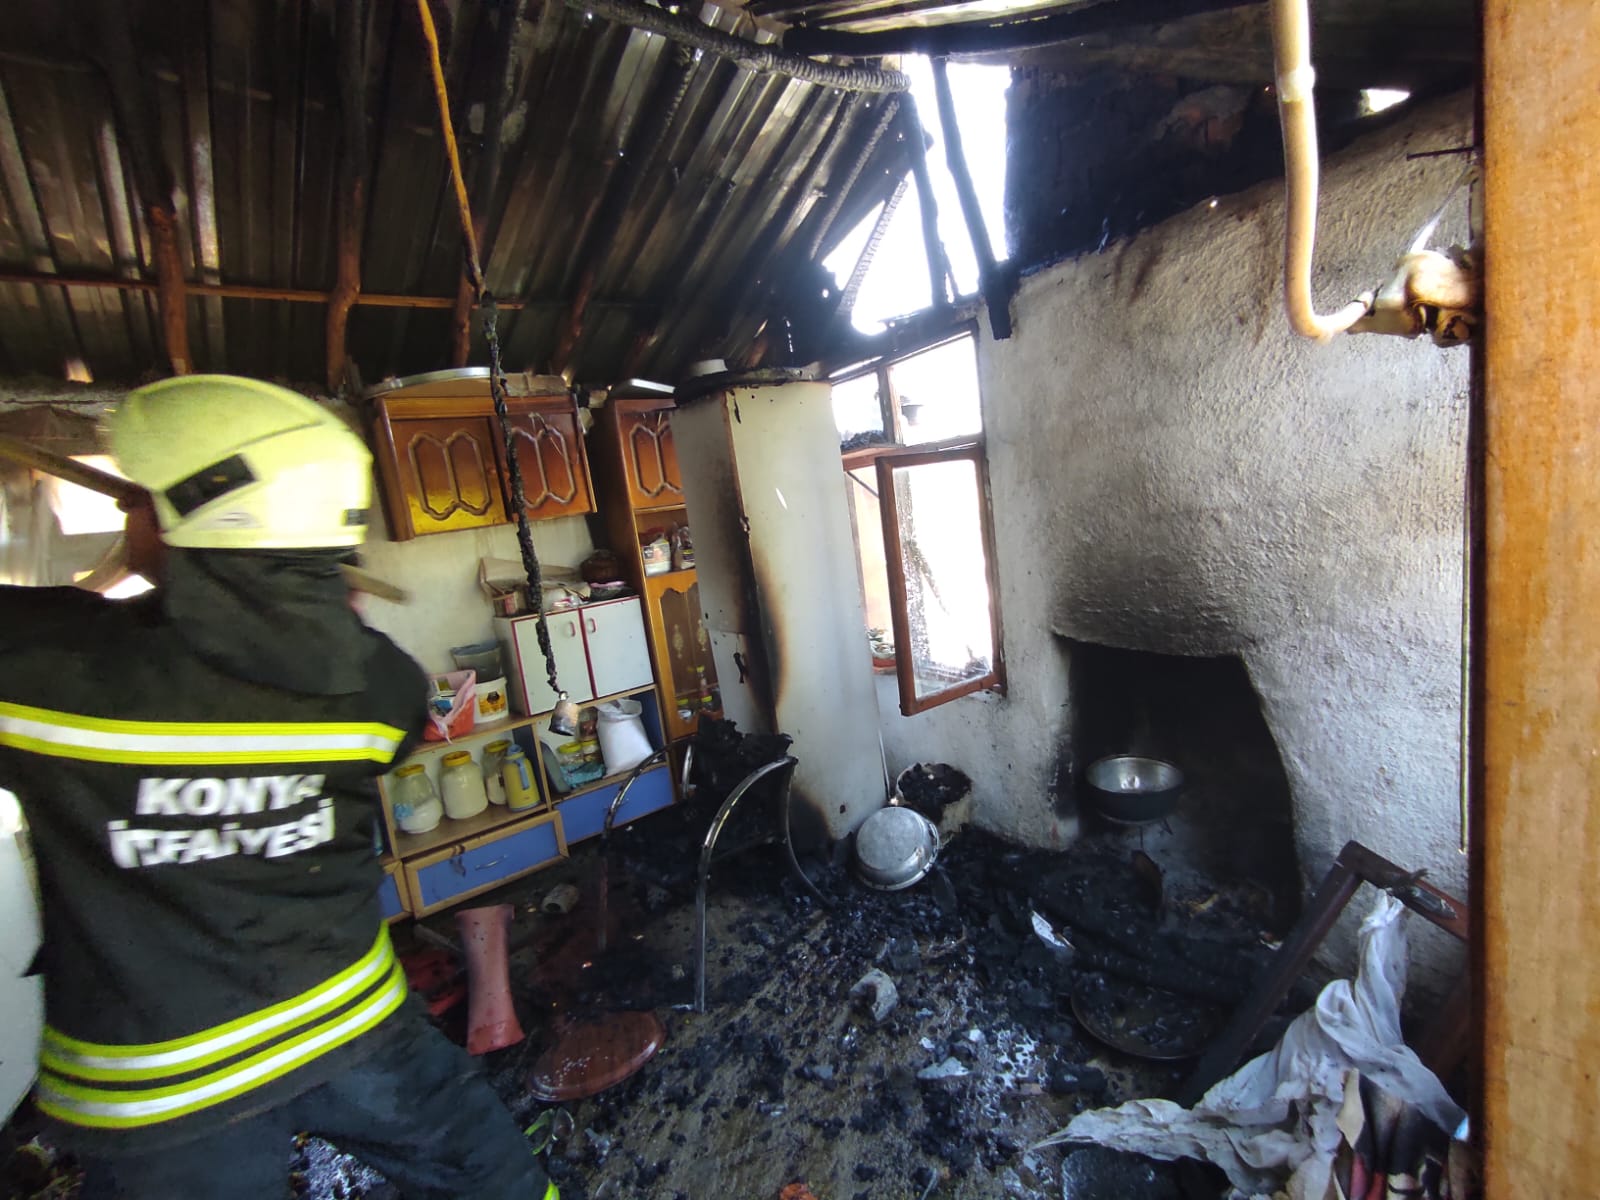 Seydişehir'de ev yangını